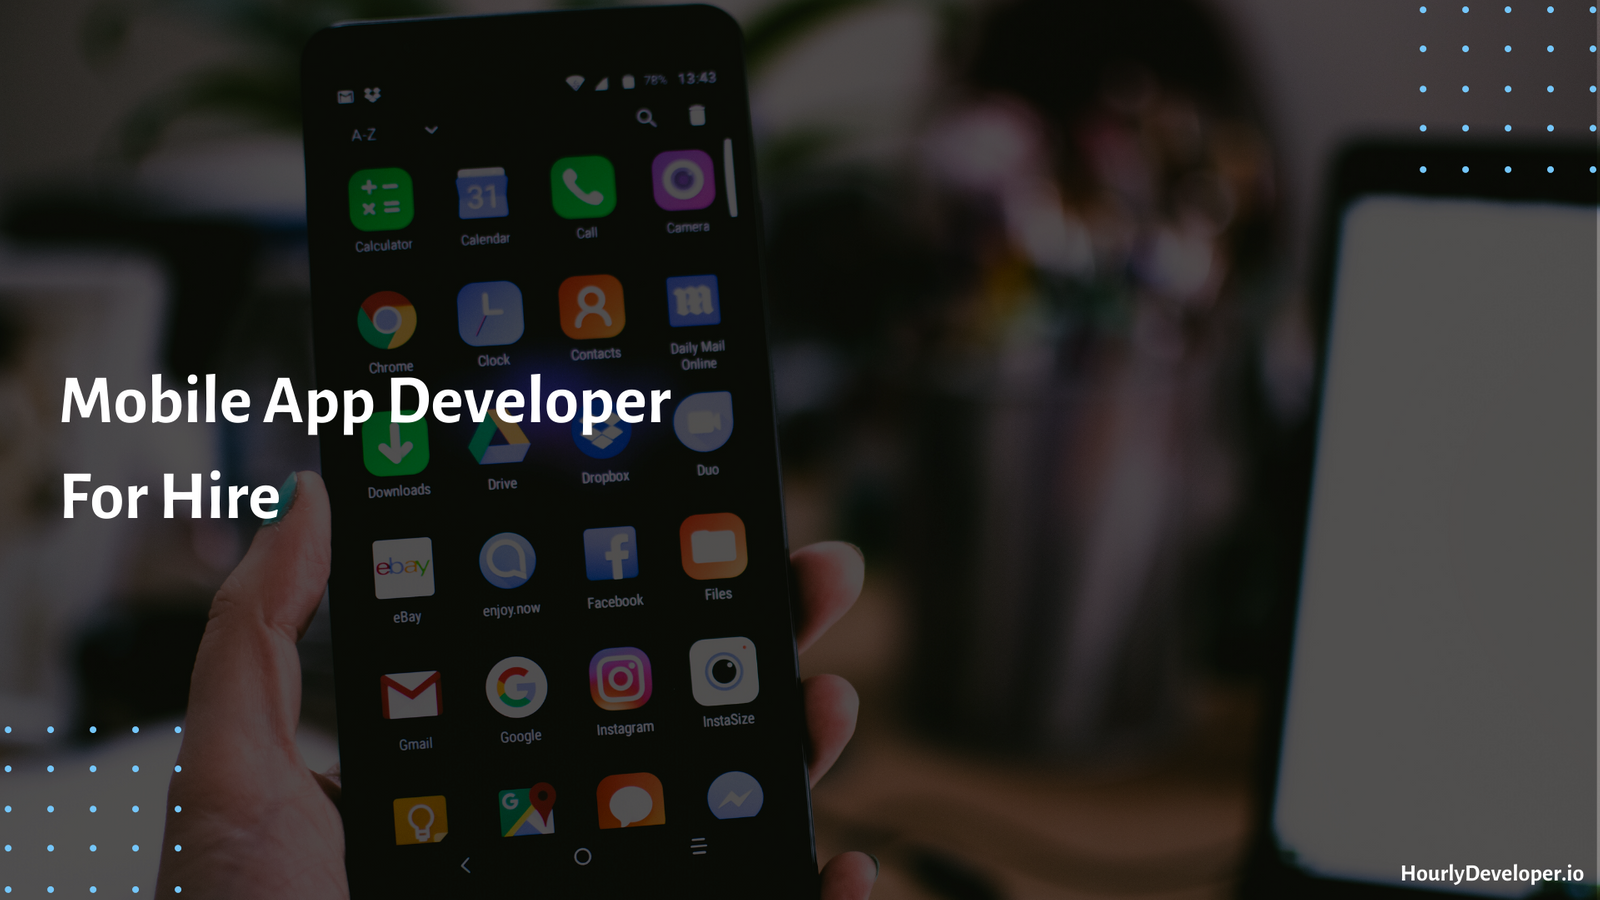 Mobile App Developer For Hire